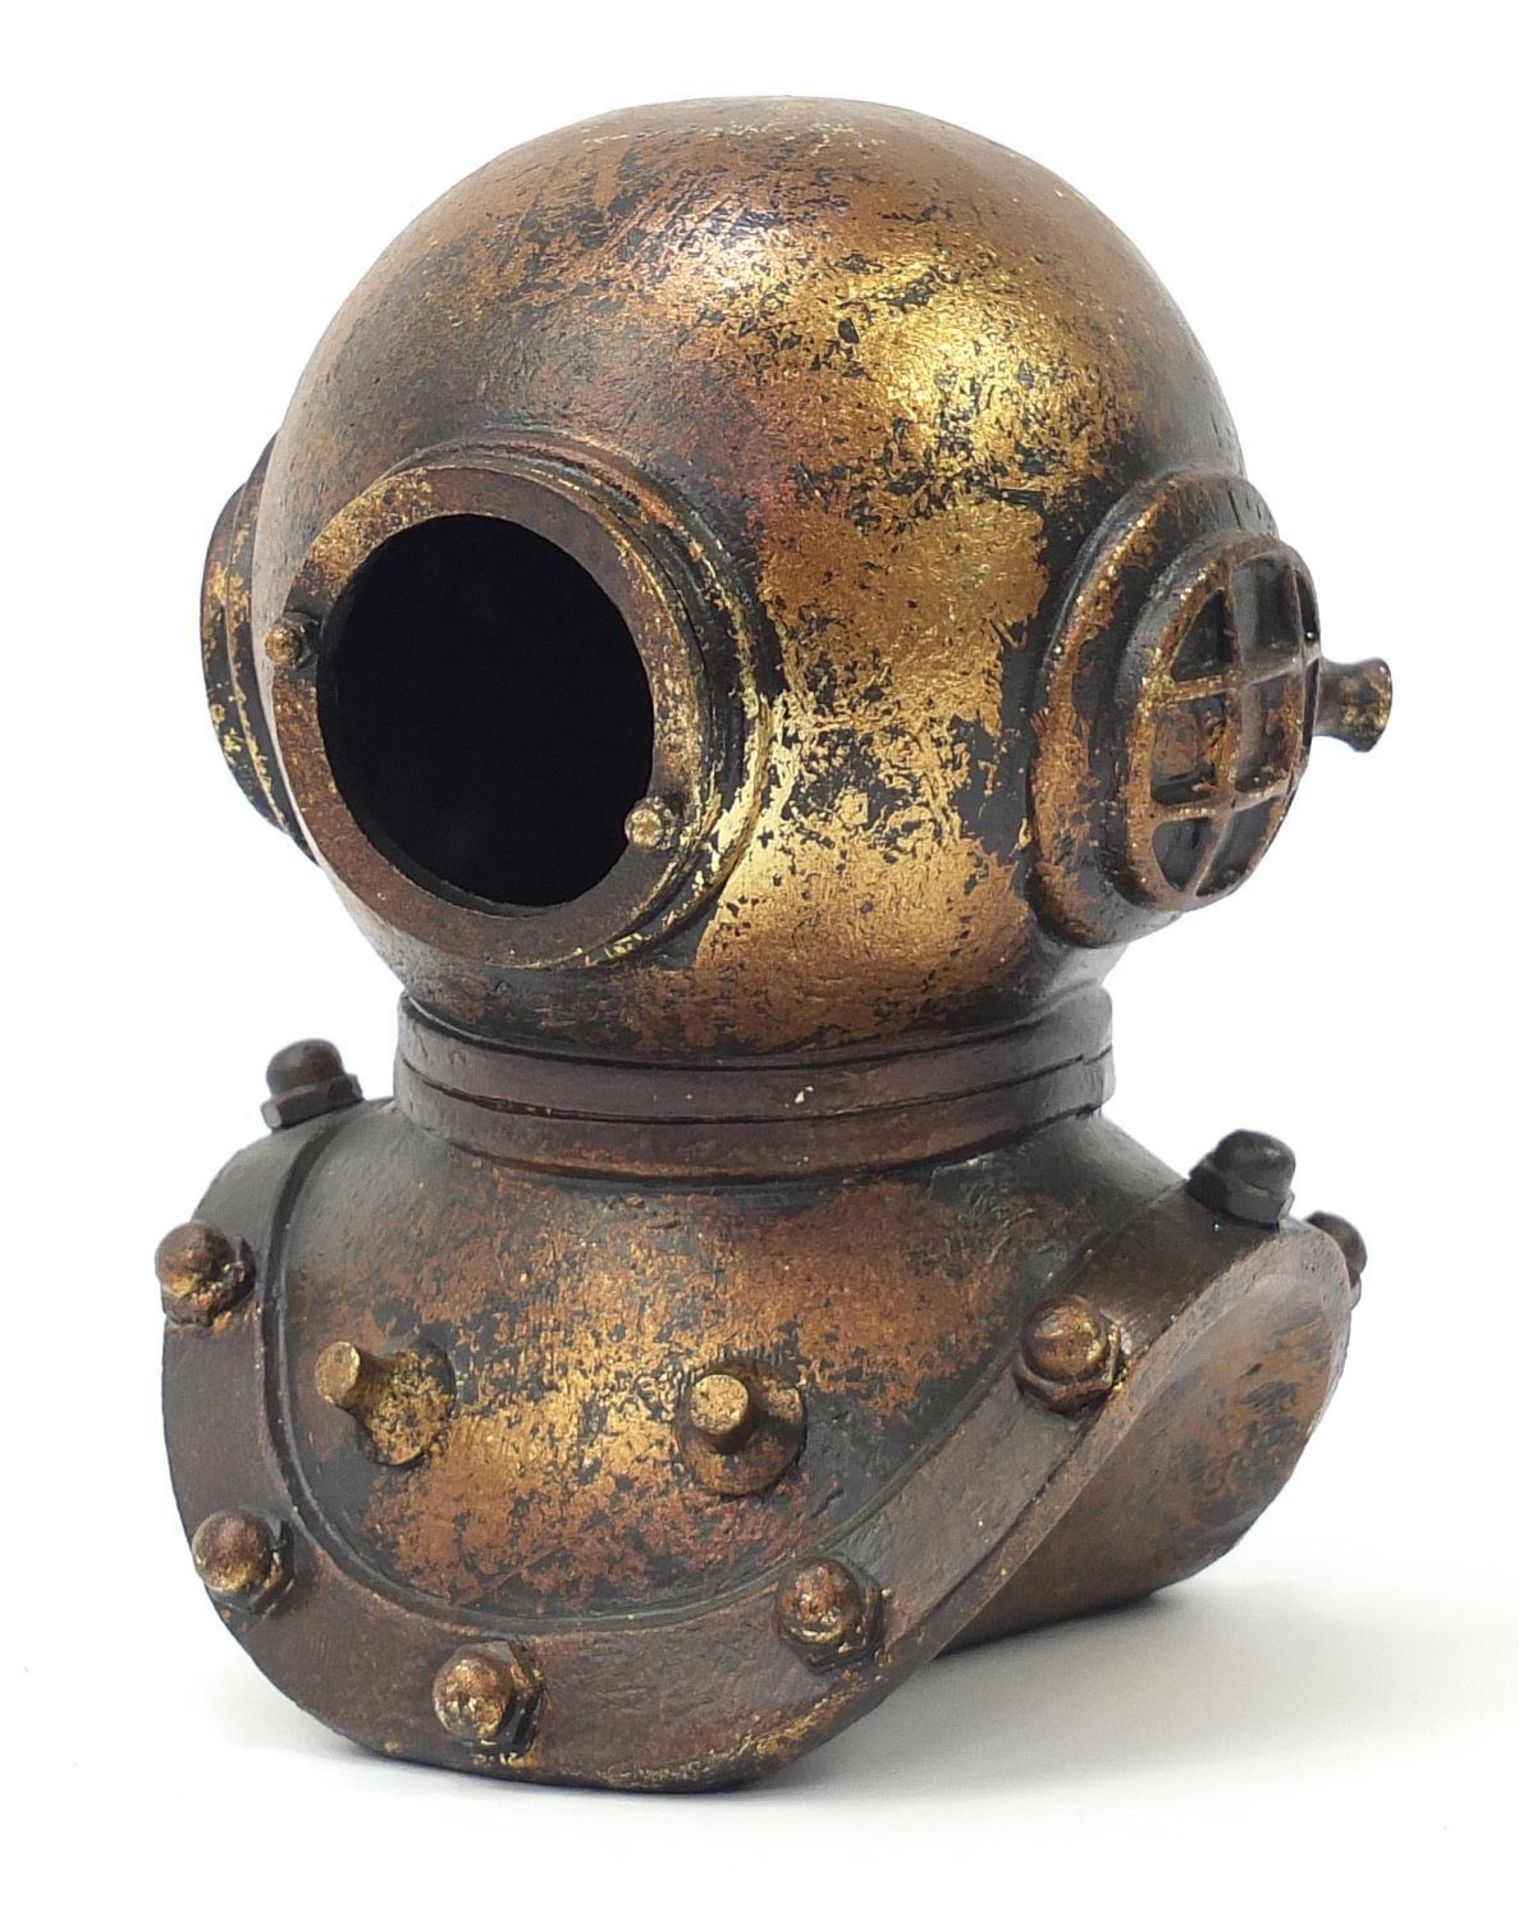 Bronzed resin diver's helmet, 21cm high :